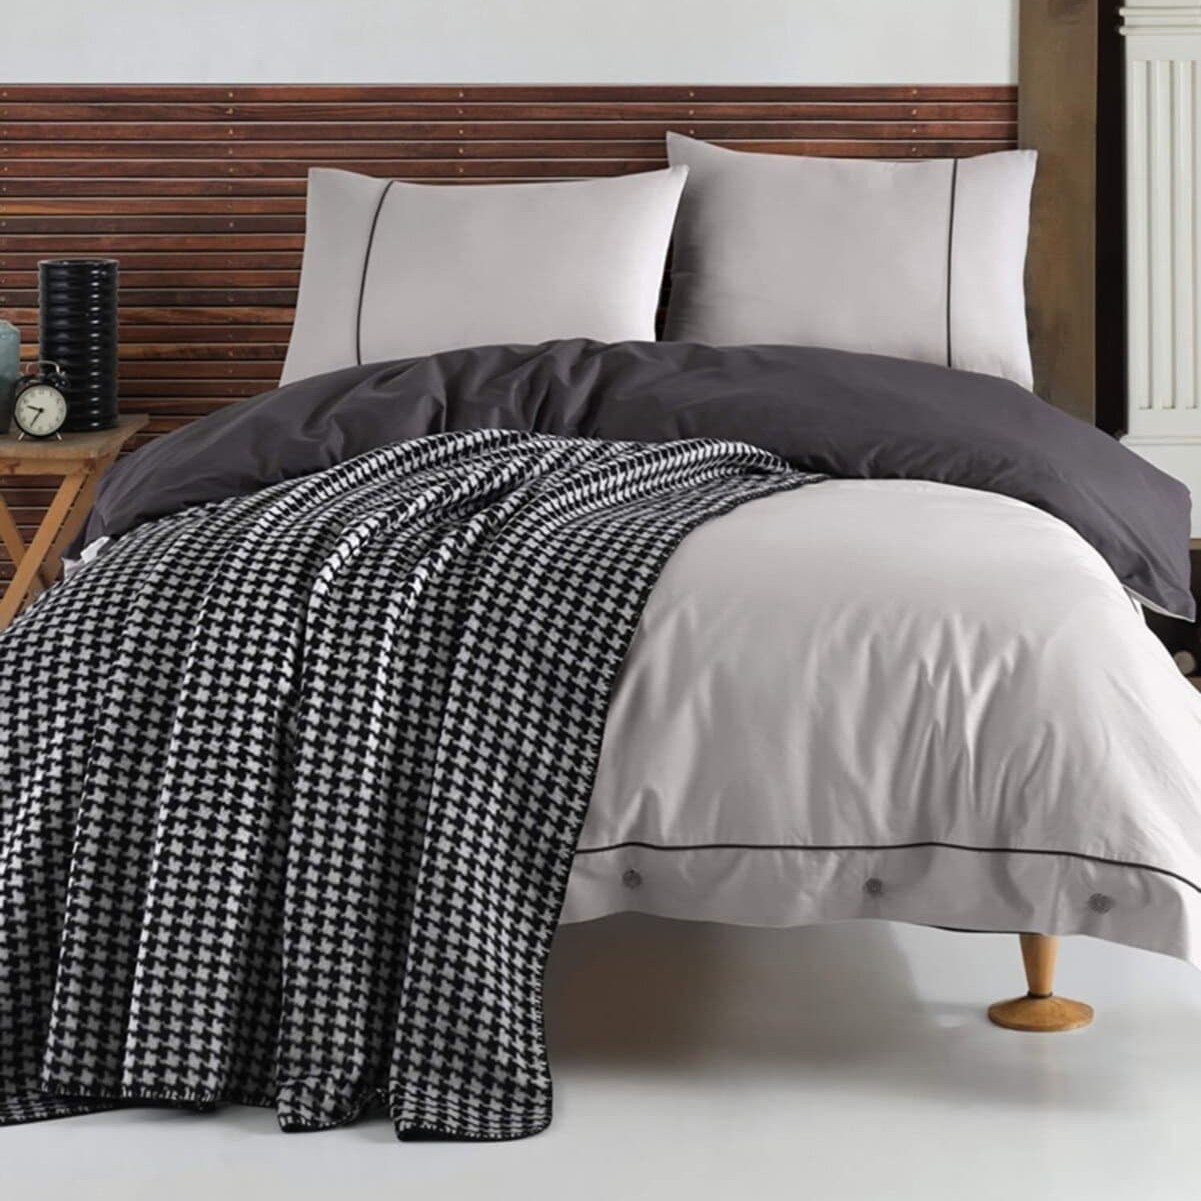 Постельное белье с одеялом-покрывалом Stylish цвет: серый (king size (евро макси))